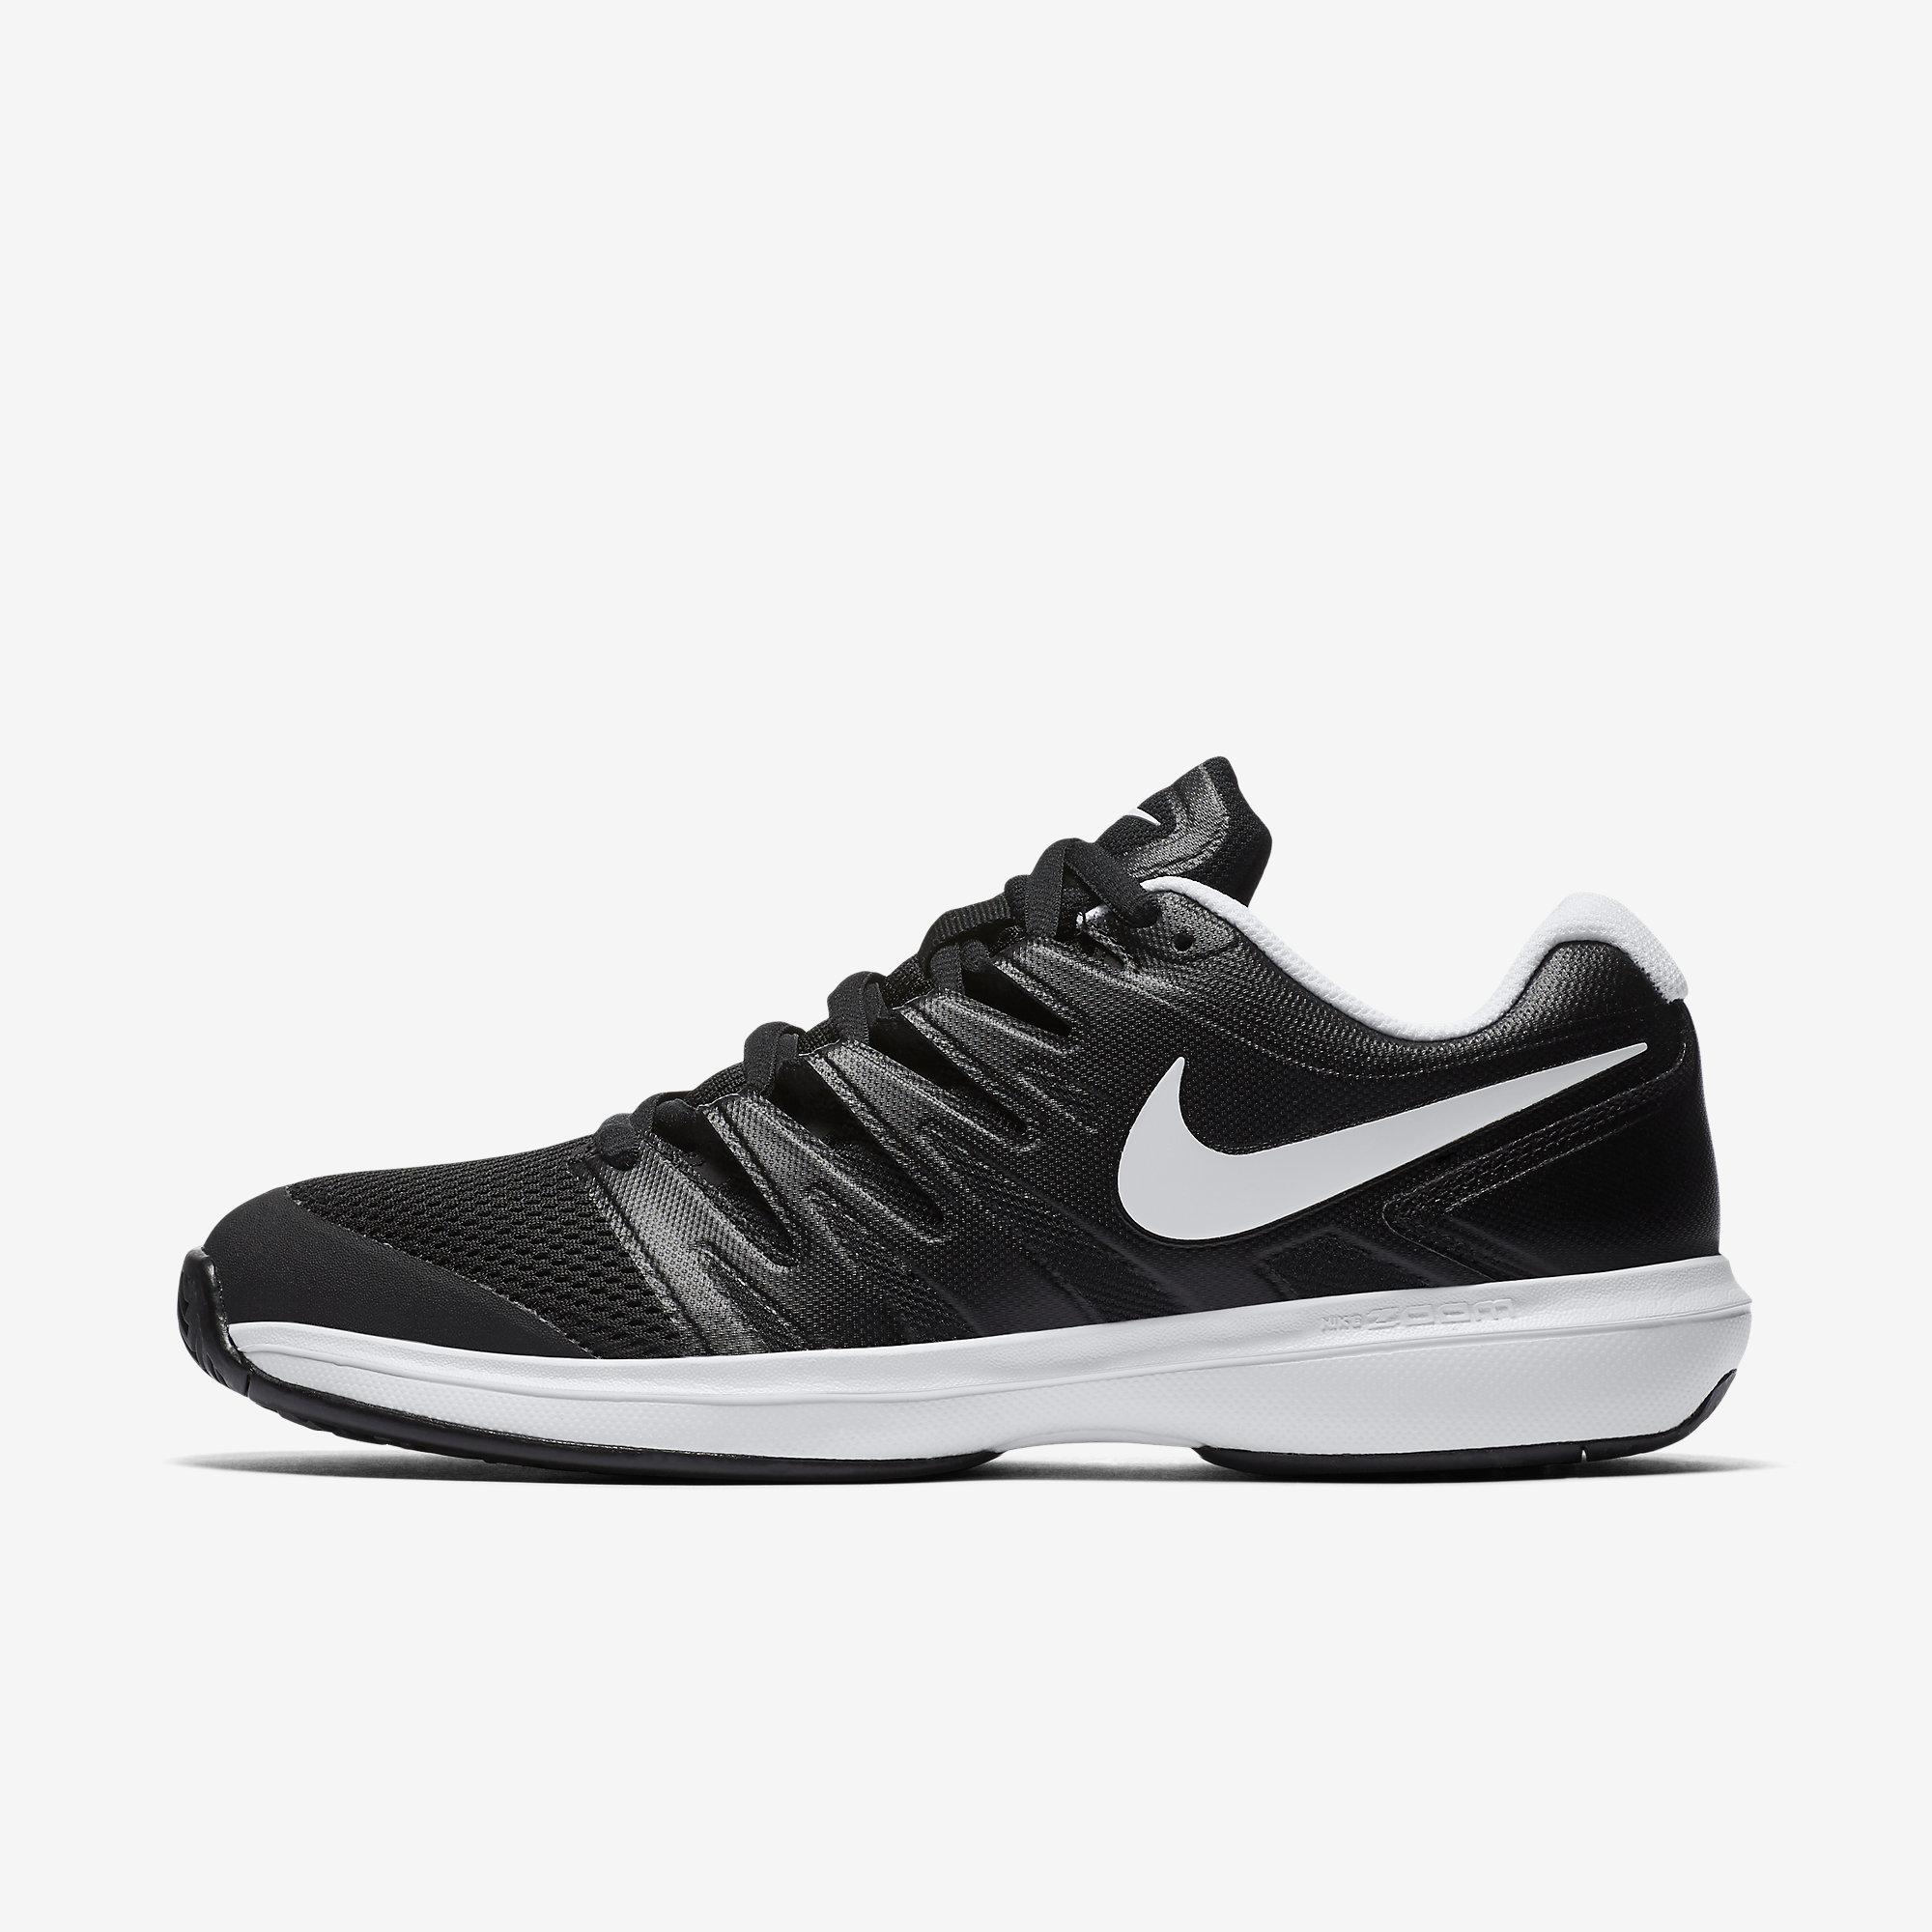 Nike Mens Air Zoom Prestige Tennis Shoes - Black/White - Tennisnuts.com
